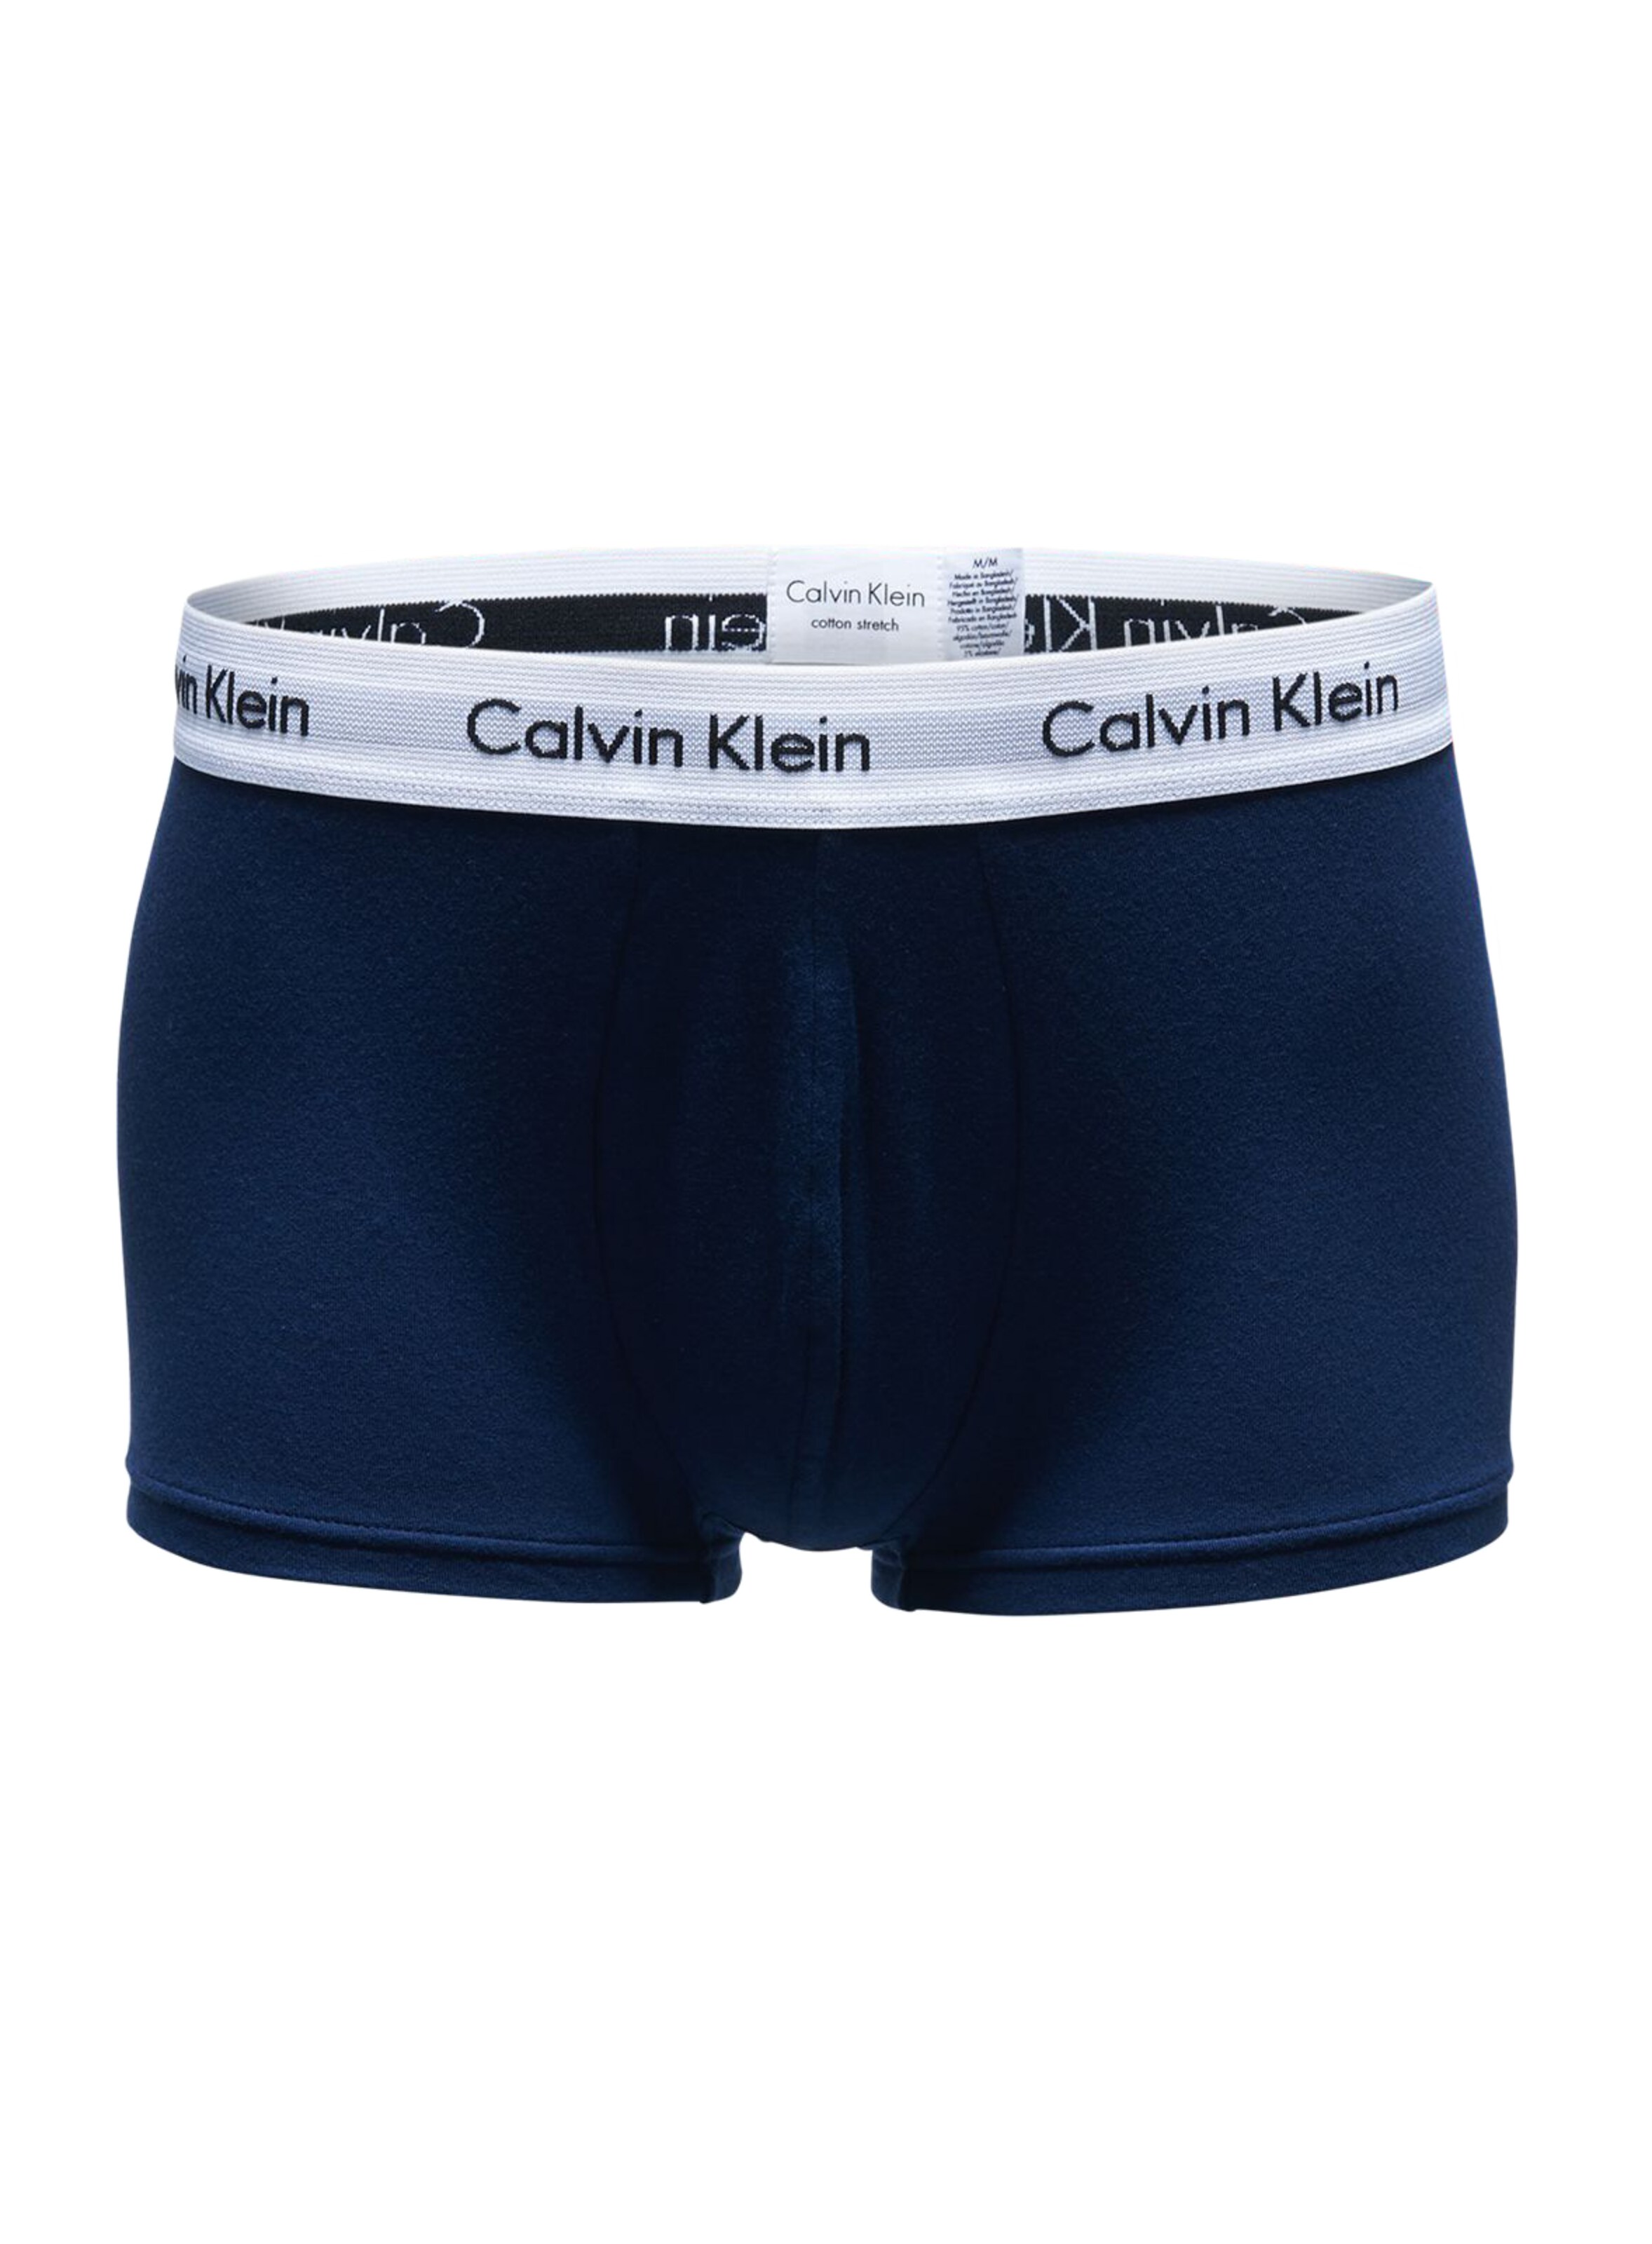 Männer Wäsche Calvin Klein Underwear Boxershorts in Mischfarben - CN61828